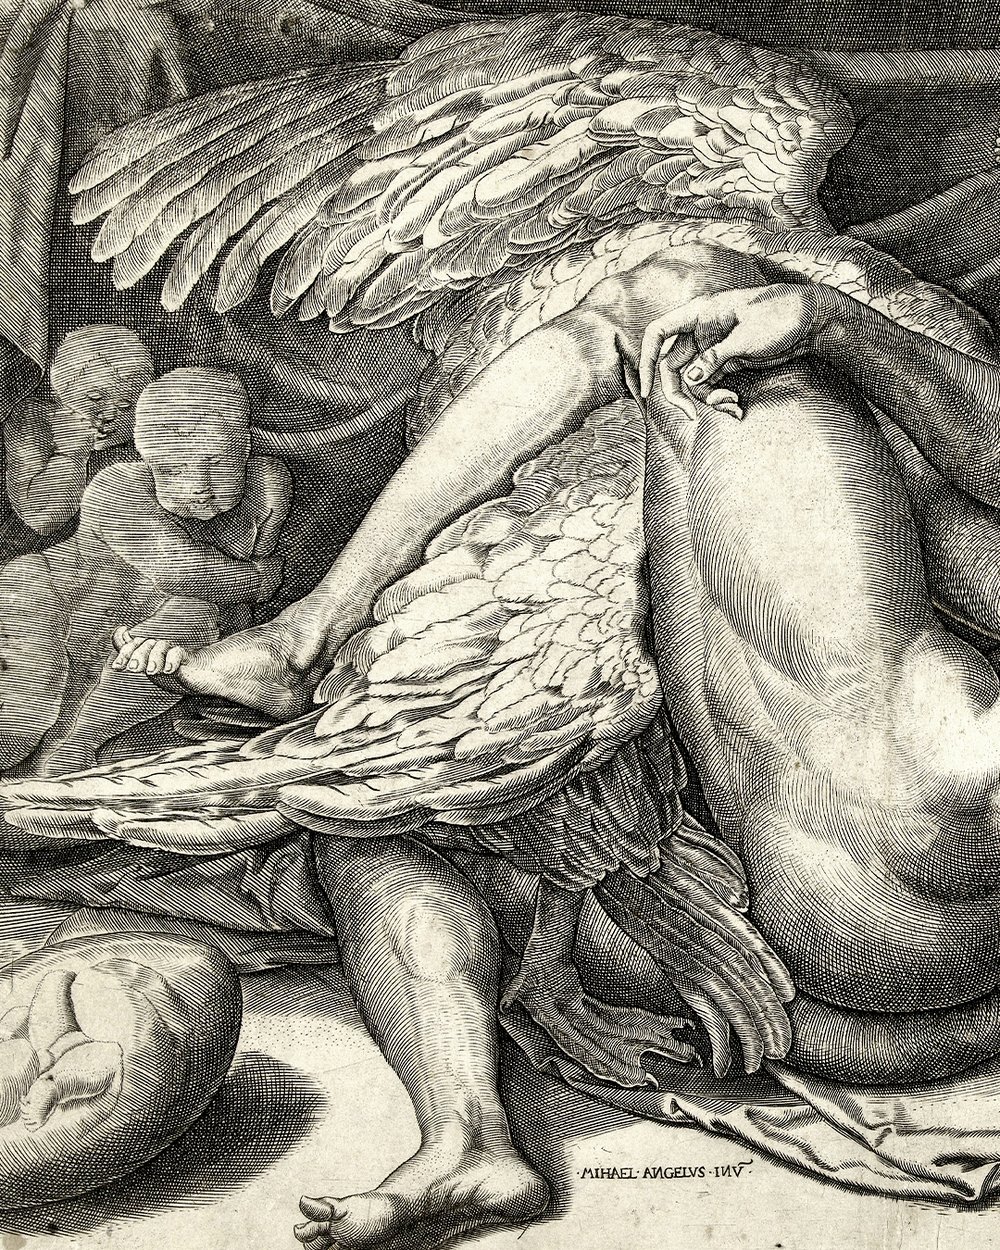 "Leda and the swan" (1544 - 1600)